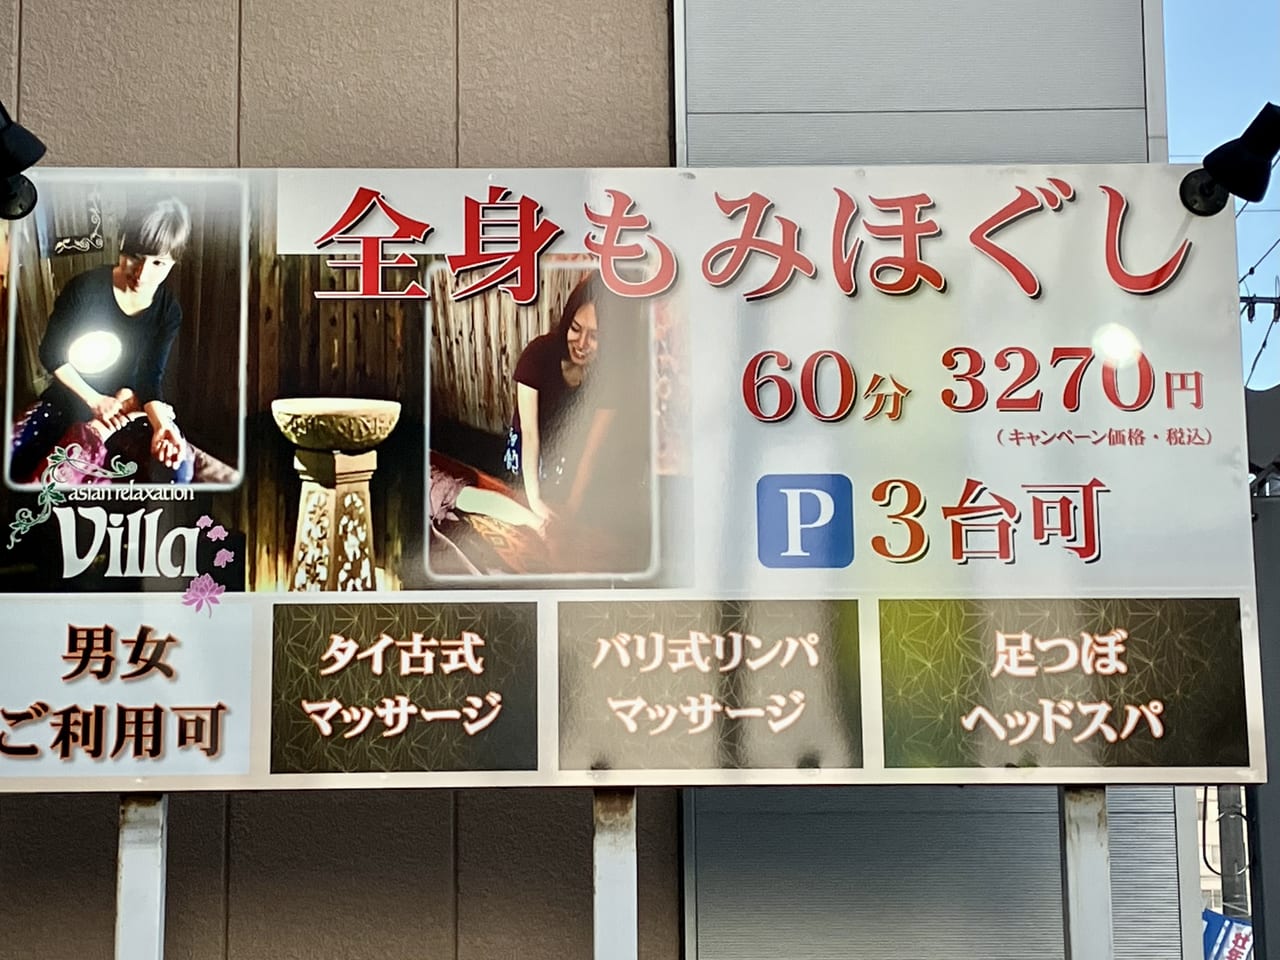 元町駅前に「asian relaxation villa札幌元町店」がOPENするようですよ。お仕事帰りに全身もみほぐしできます。